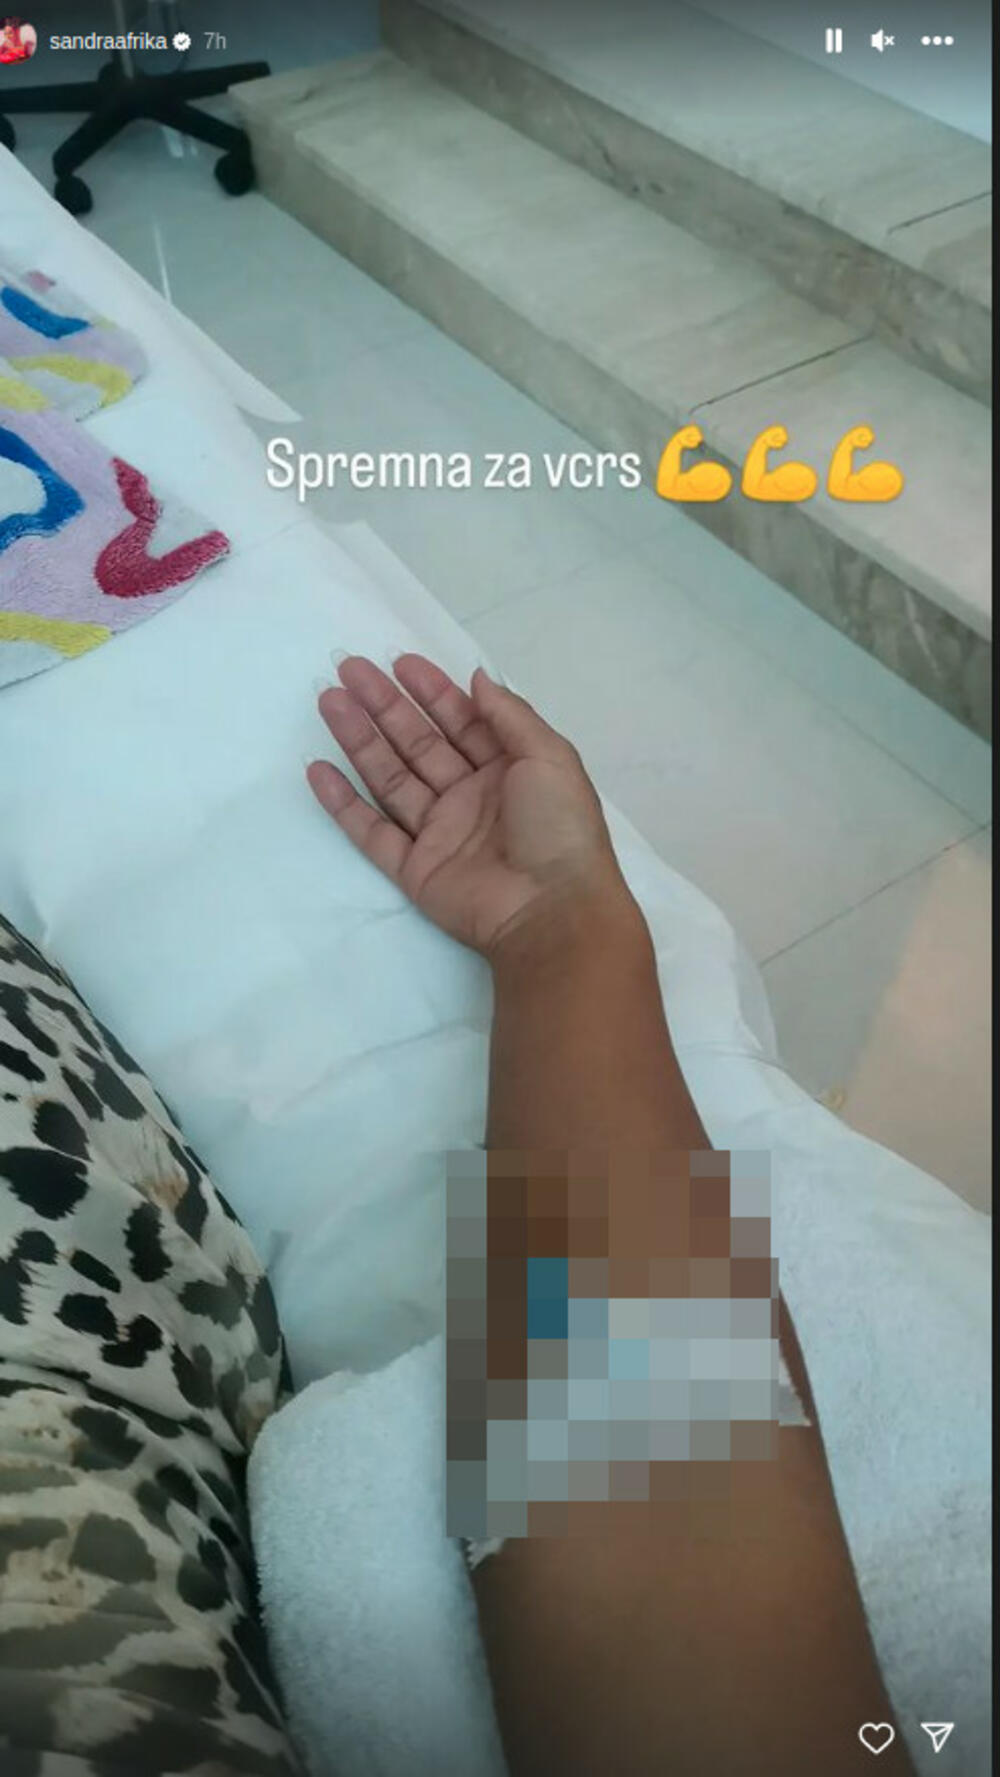 Pevačica je objavila stori na društvenoj mreži Instagram, te svoju fotografiju gde se vidi ruka na koju je prikačena infuzija